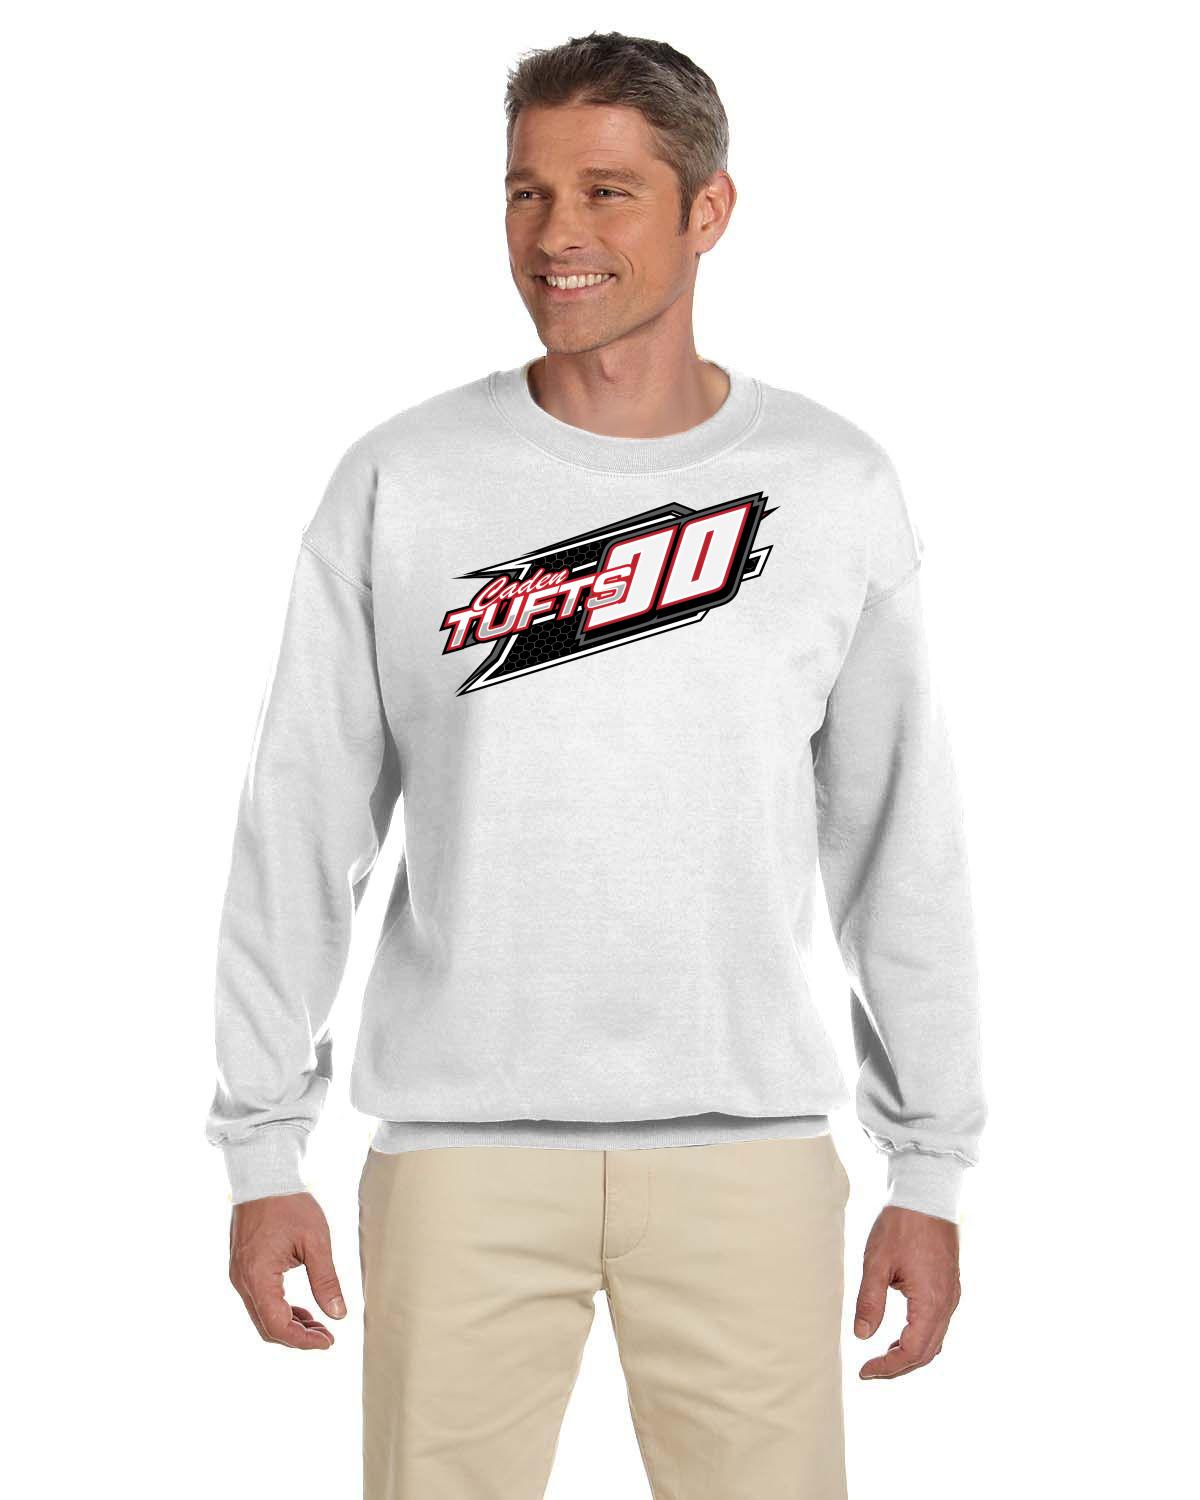 Caden Tufts Legends Racing Adult Crew Neck sweater